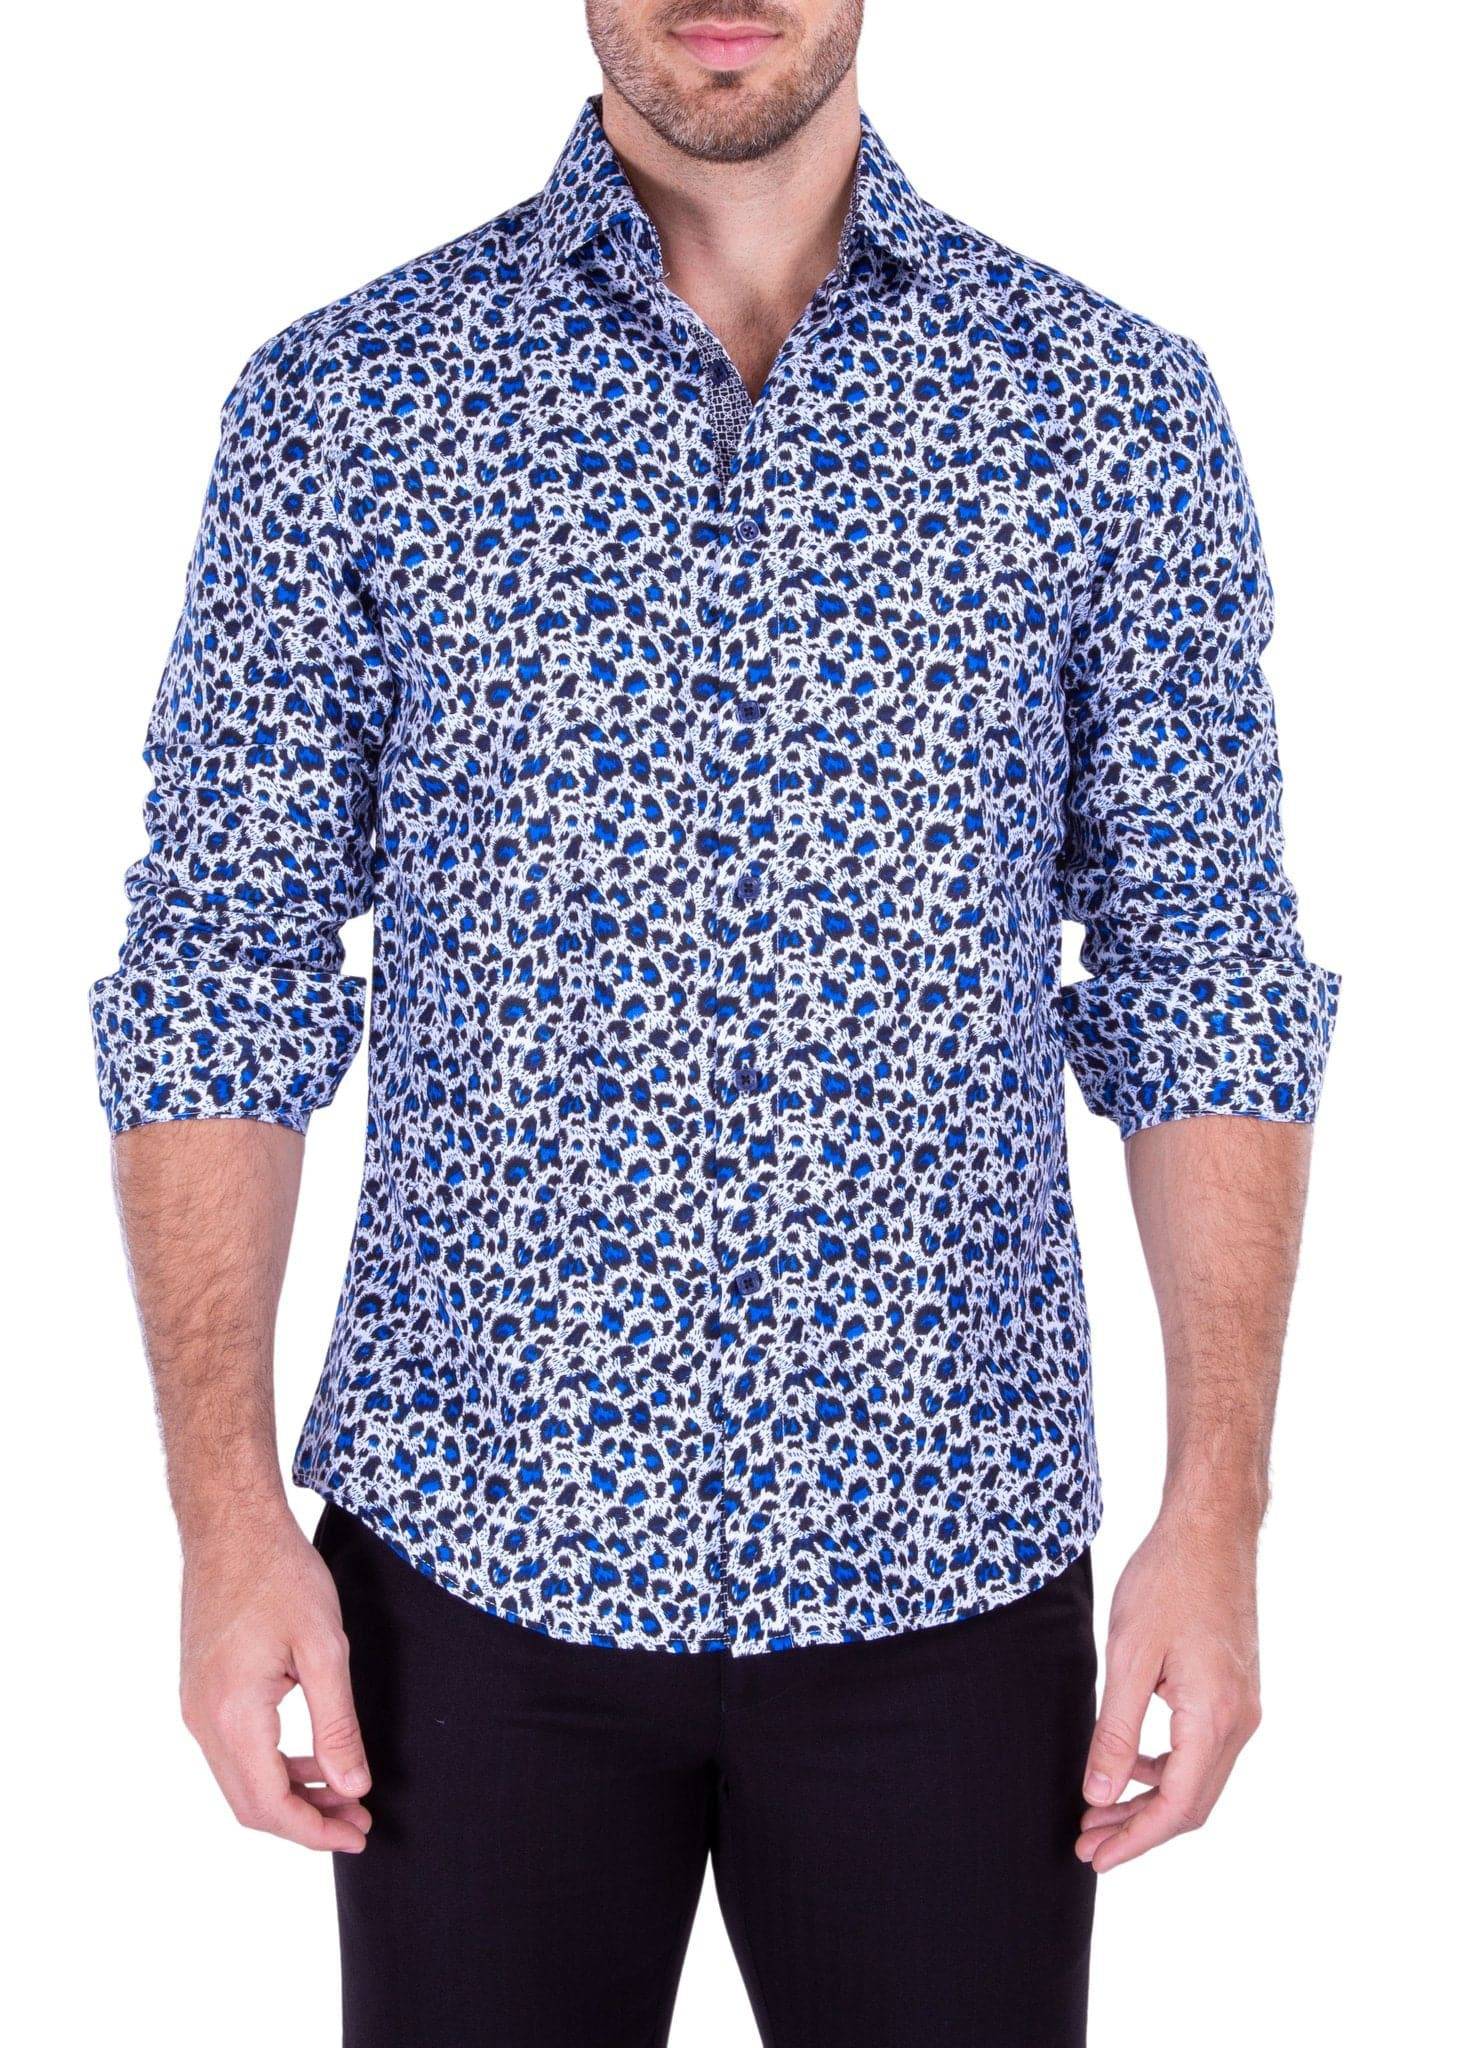 Blue Leopard Print Men's Fashion Shirt front view